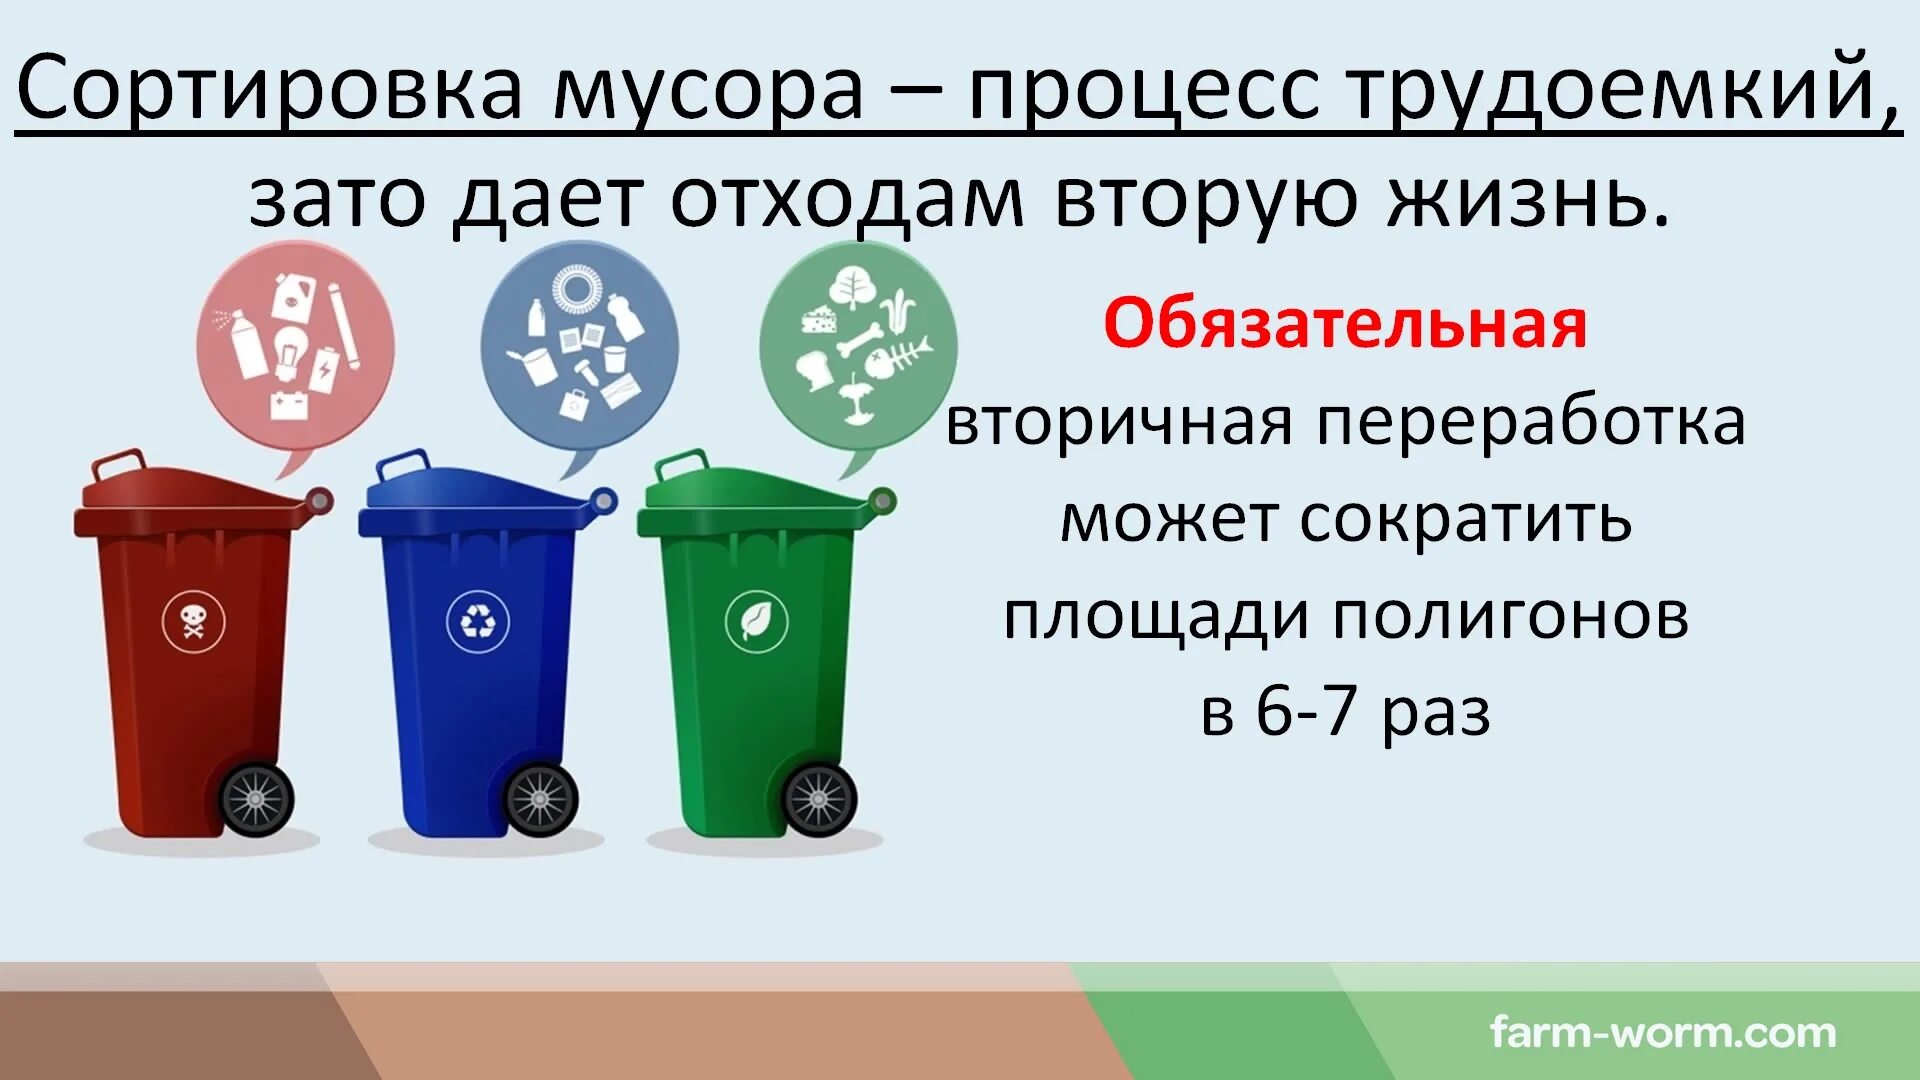 Содержание тко что это. Классификация утилизации отходов. Типы бытовых отходов. Типы мусорных отходов. Переработка мусора.